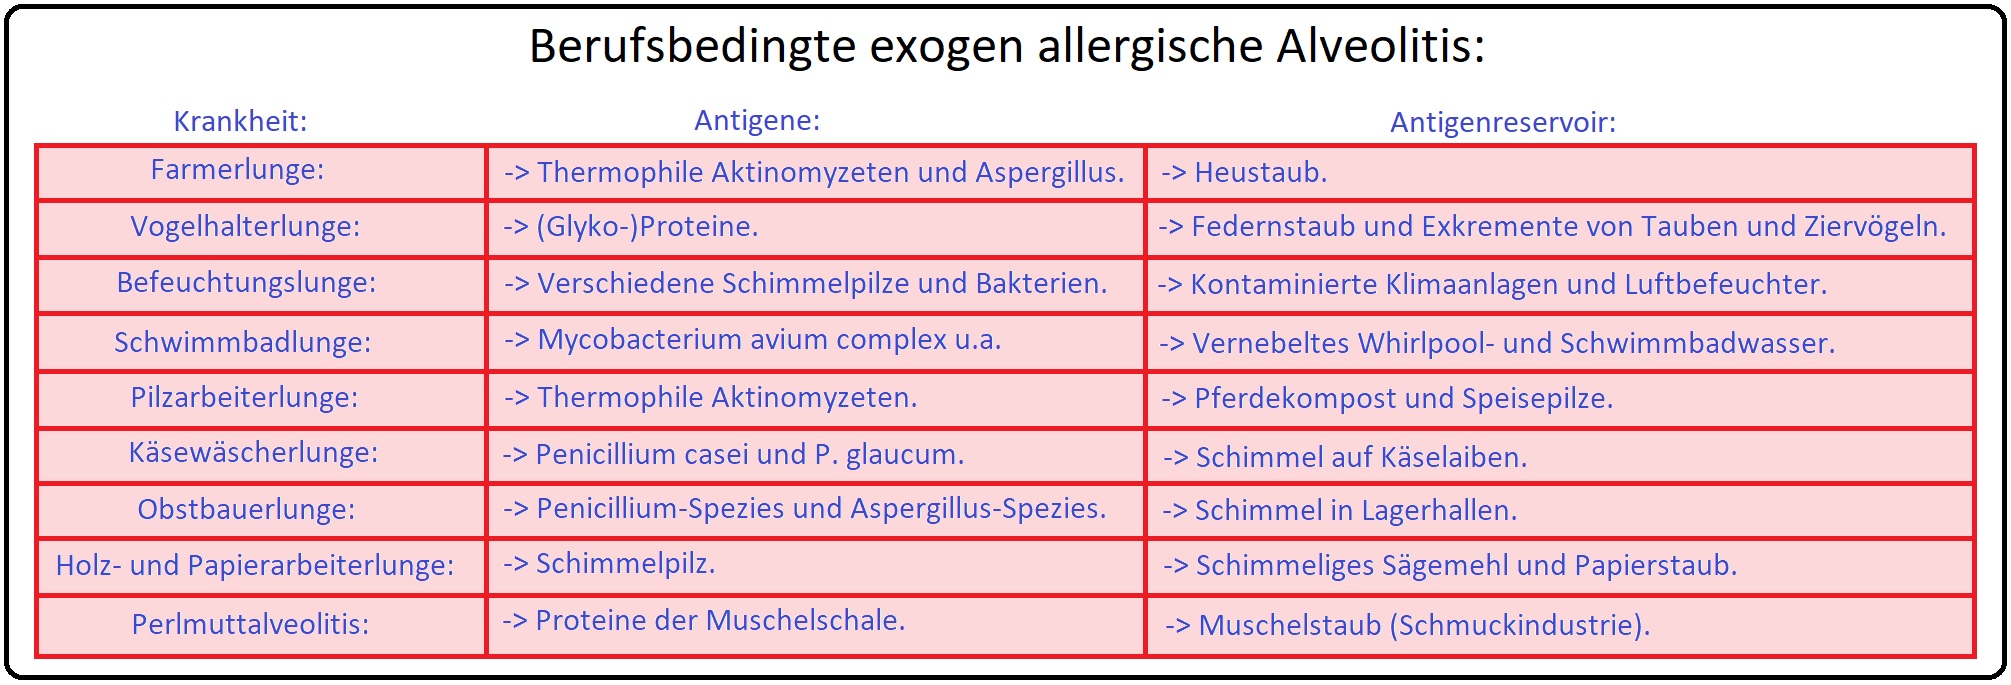 1001 Berufsbedingte exogen allergische Alveolitis